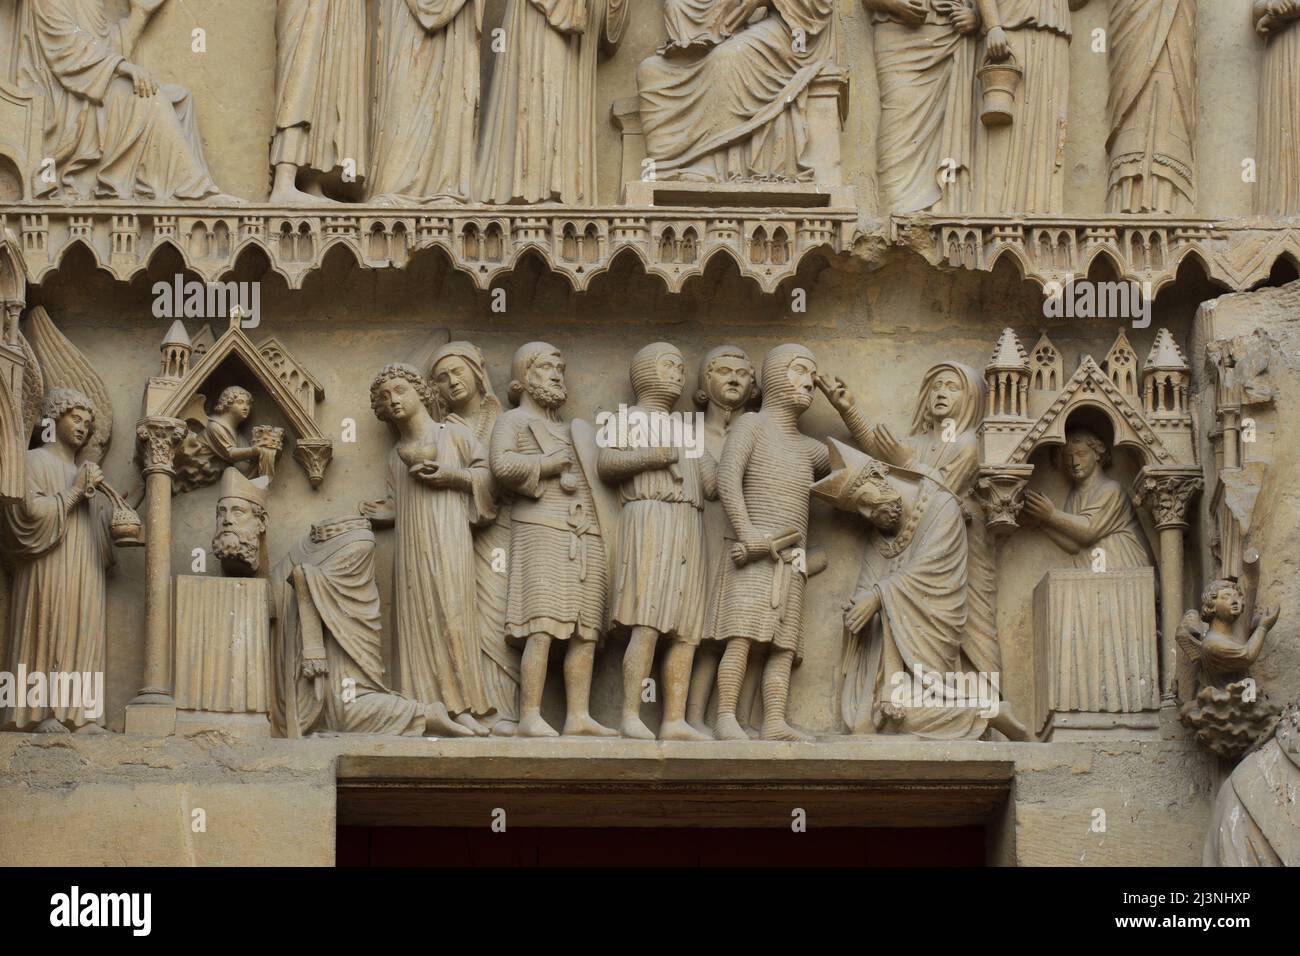 Décapitation de Saint Nicosius de Reims représentée dans le tympan du portail central de la façade nord de la cathédrale de Reims (Cathédrale notre-Dame de Reims) à Reims, France. Banque D'Images